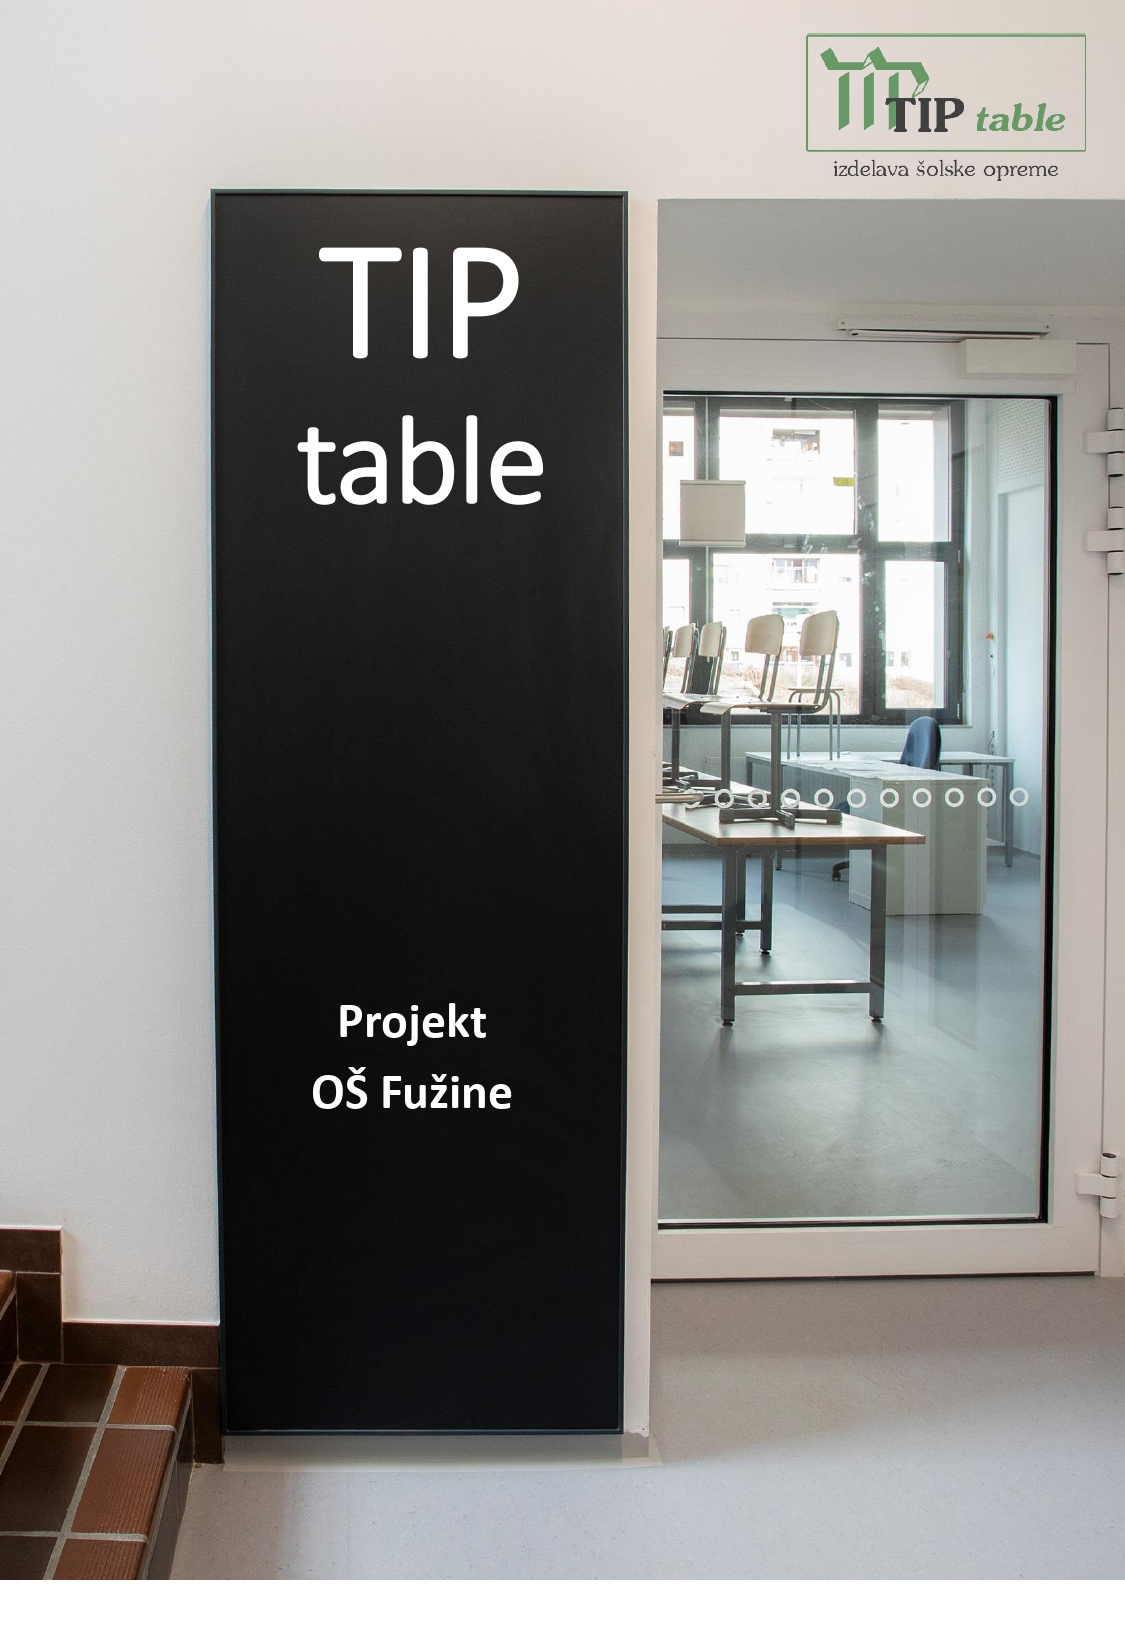 TIP table Projekt OŠ Fužine slikovna predstavitev 1